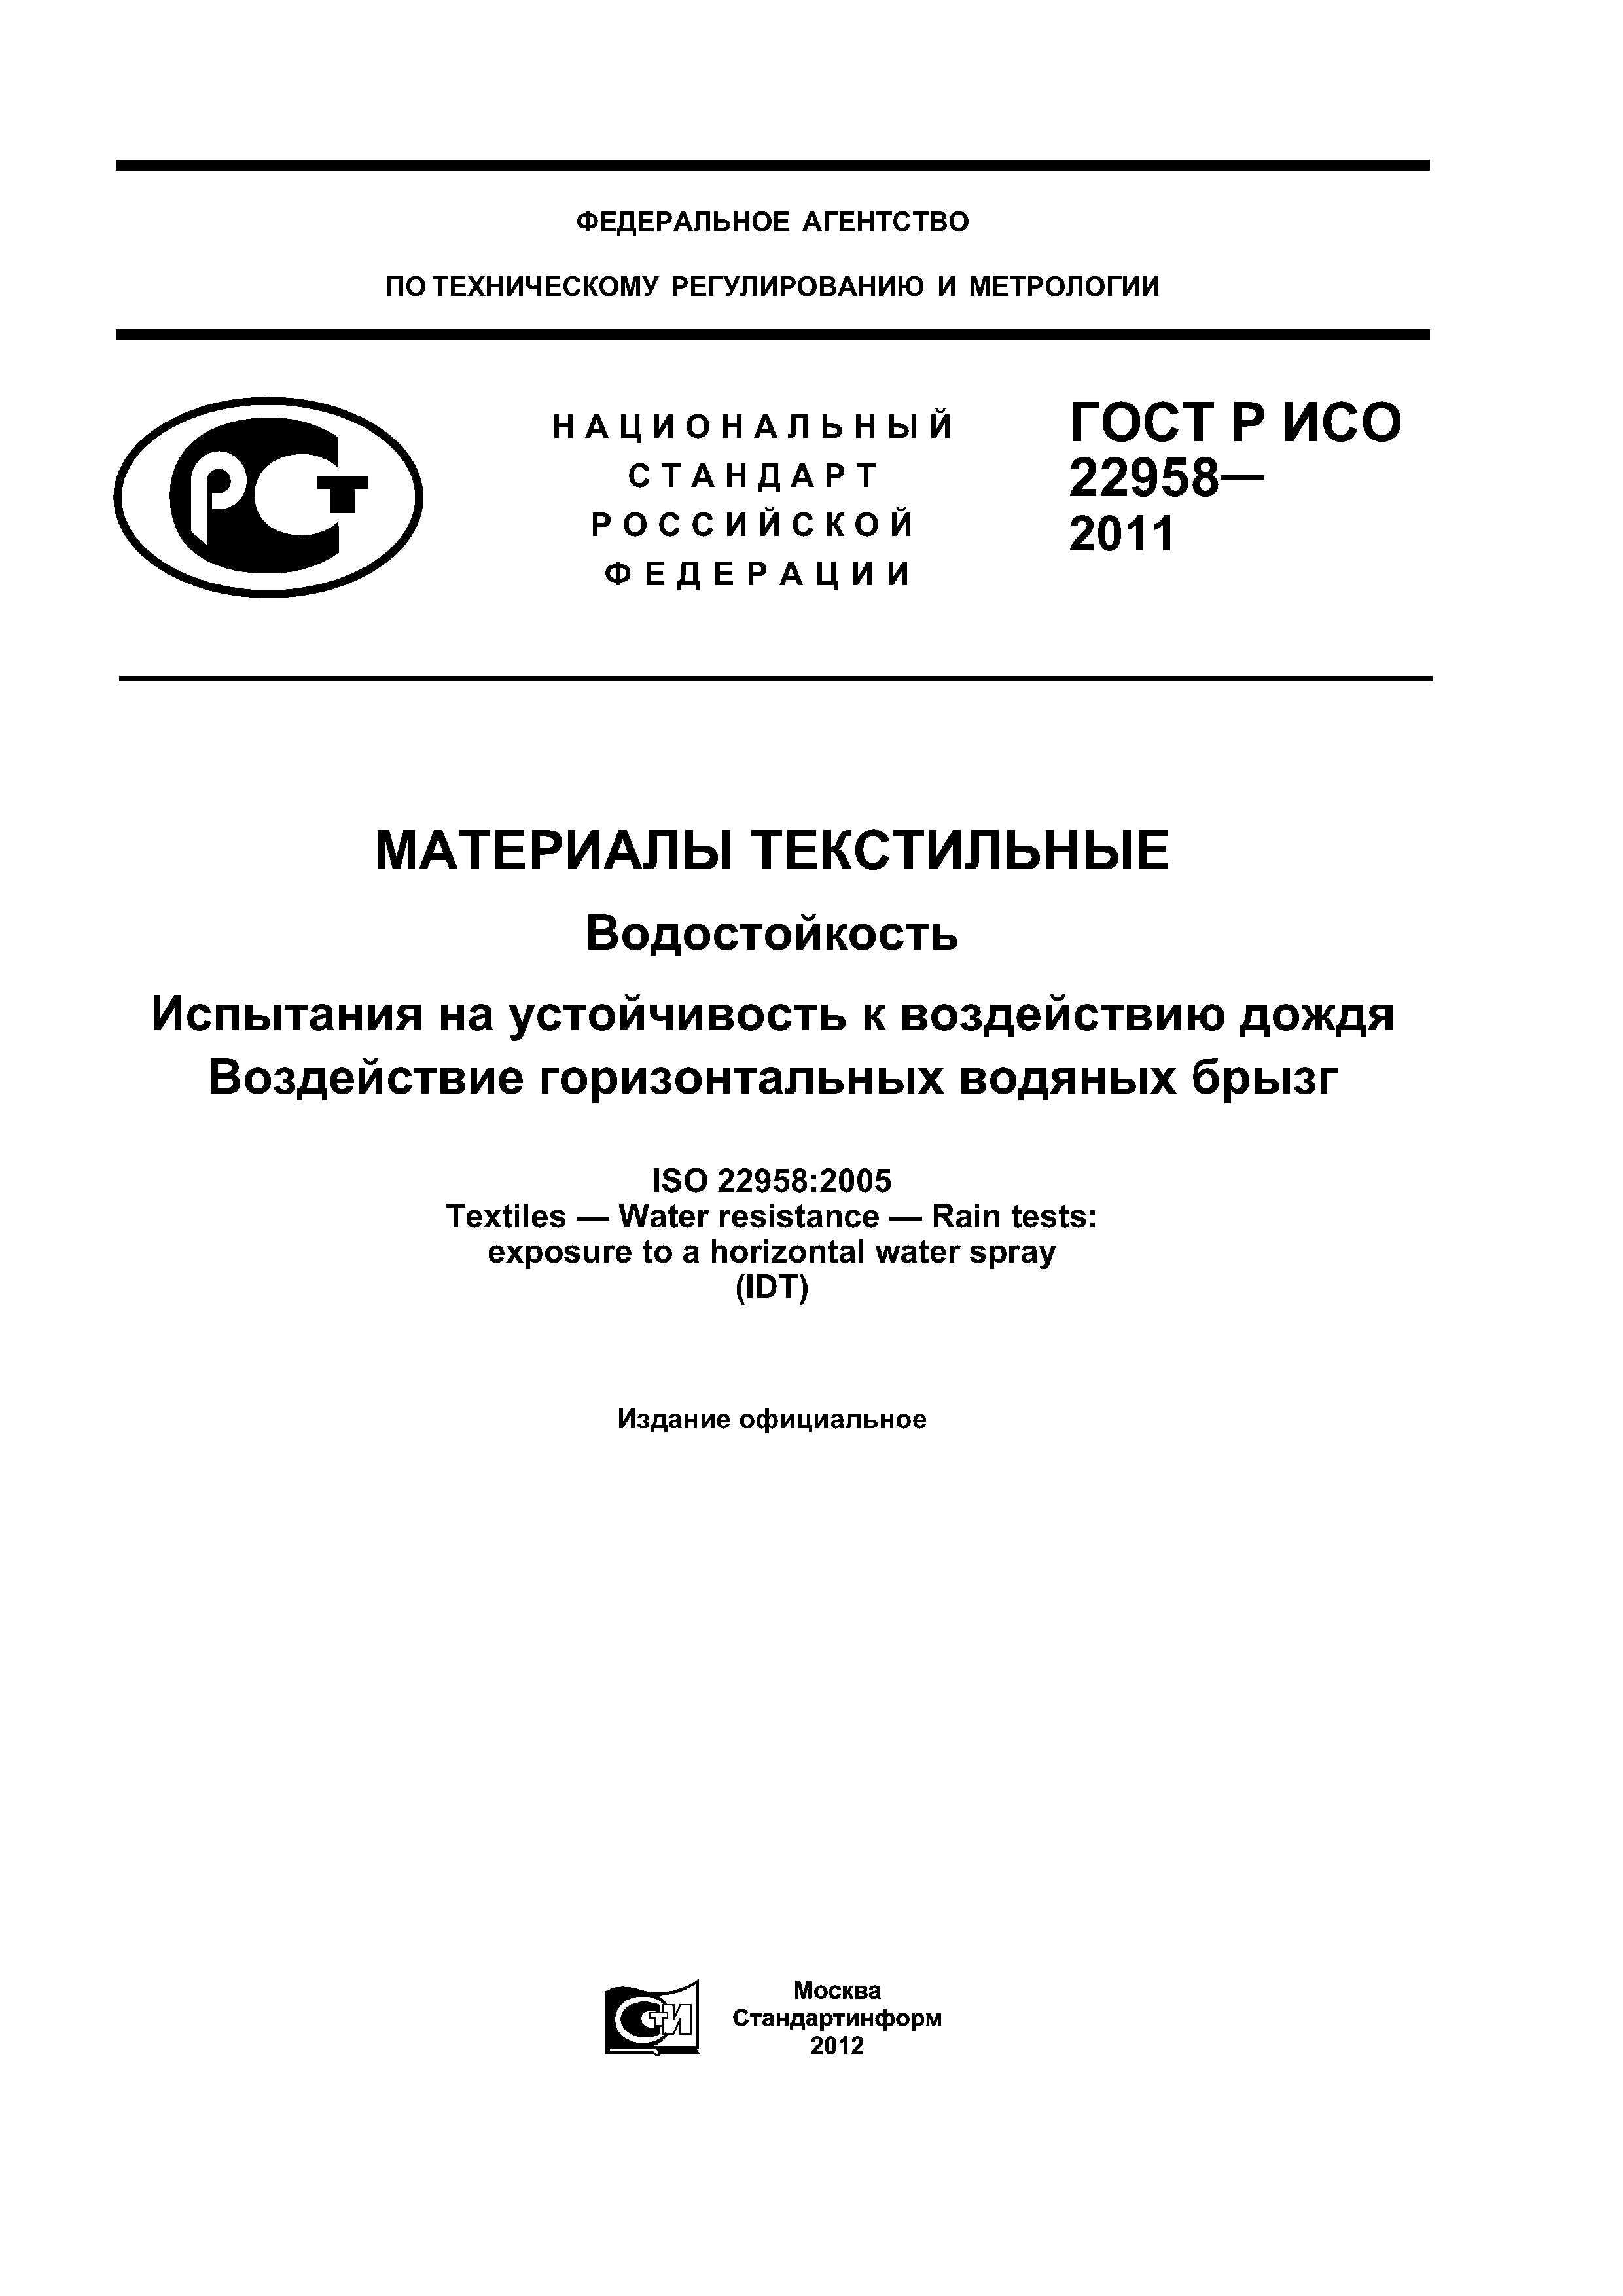 ГОСТ Р ИСО 22958-2011